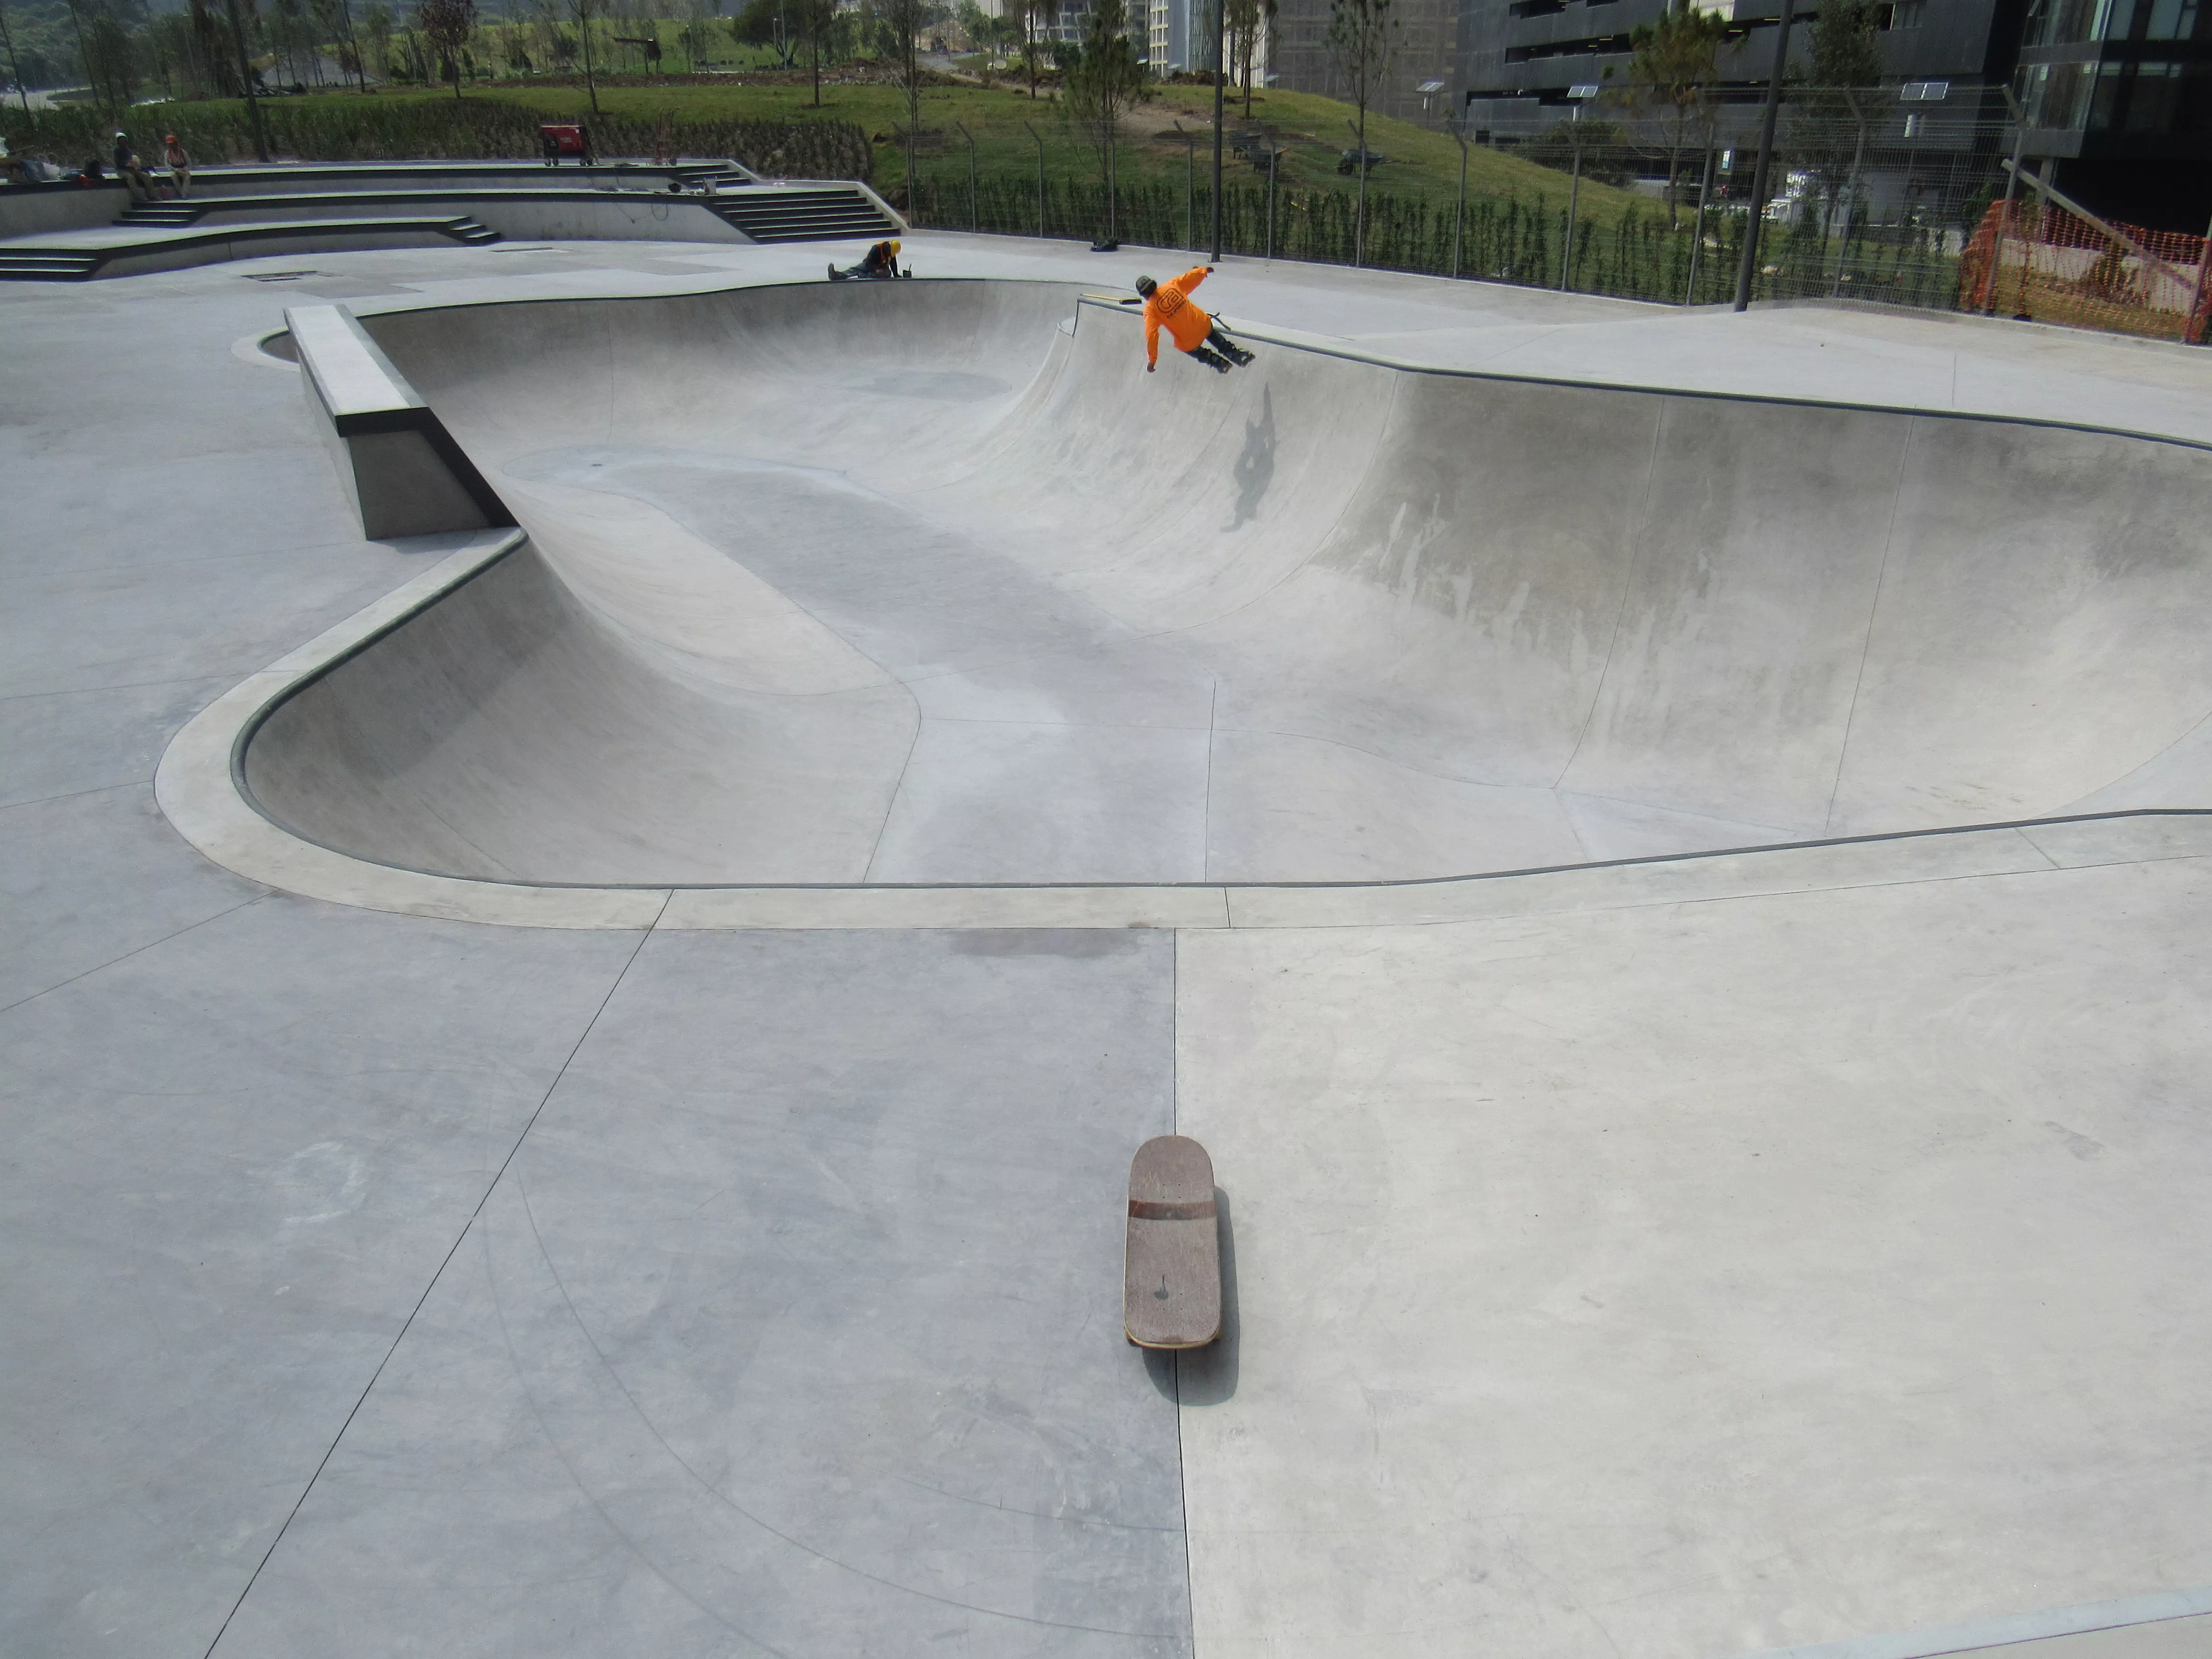 Gleneagles Skatepark in Canada, North America | Skateboarding - Rated 0.8